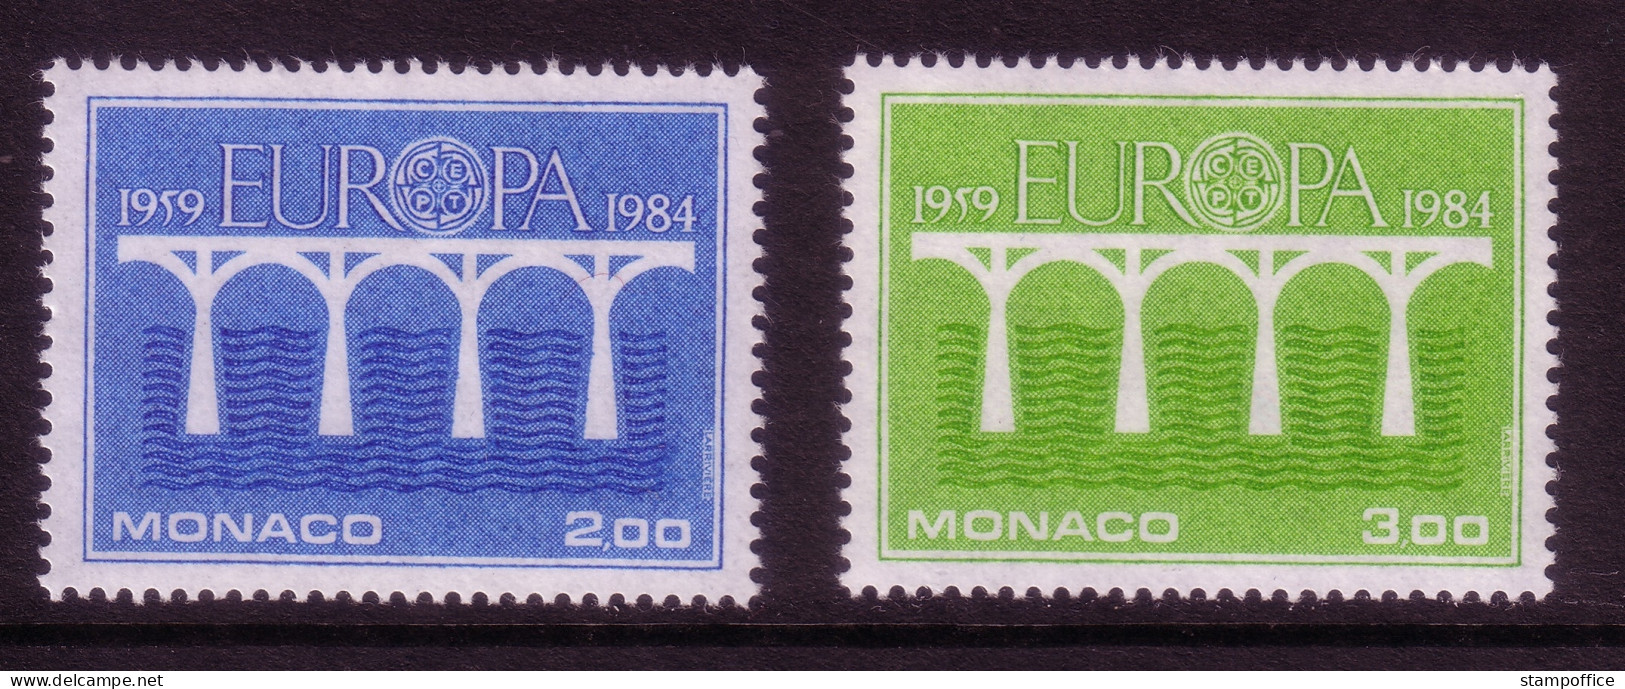 MONACO MI.NR. 1622-1623 POSTFRISCH(MINT) EUROPA 1984 BRÜCKEN - 1984